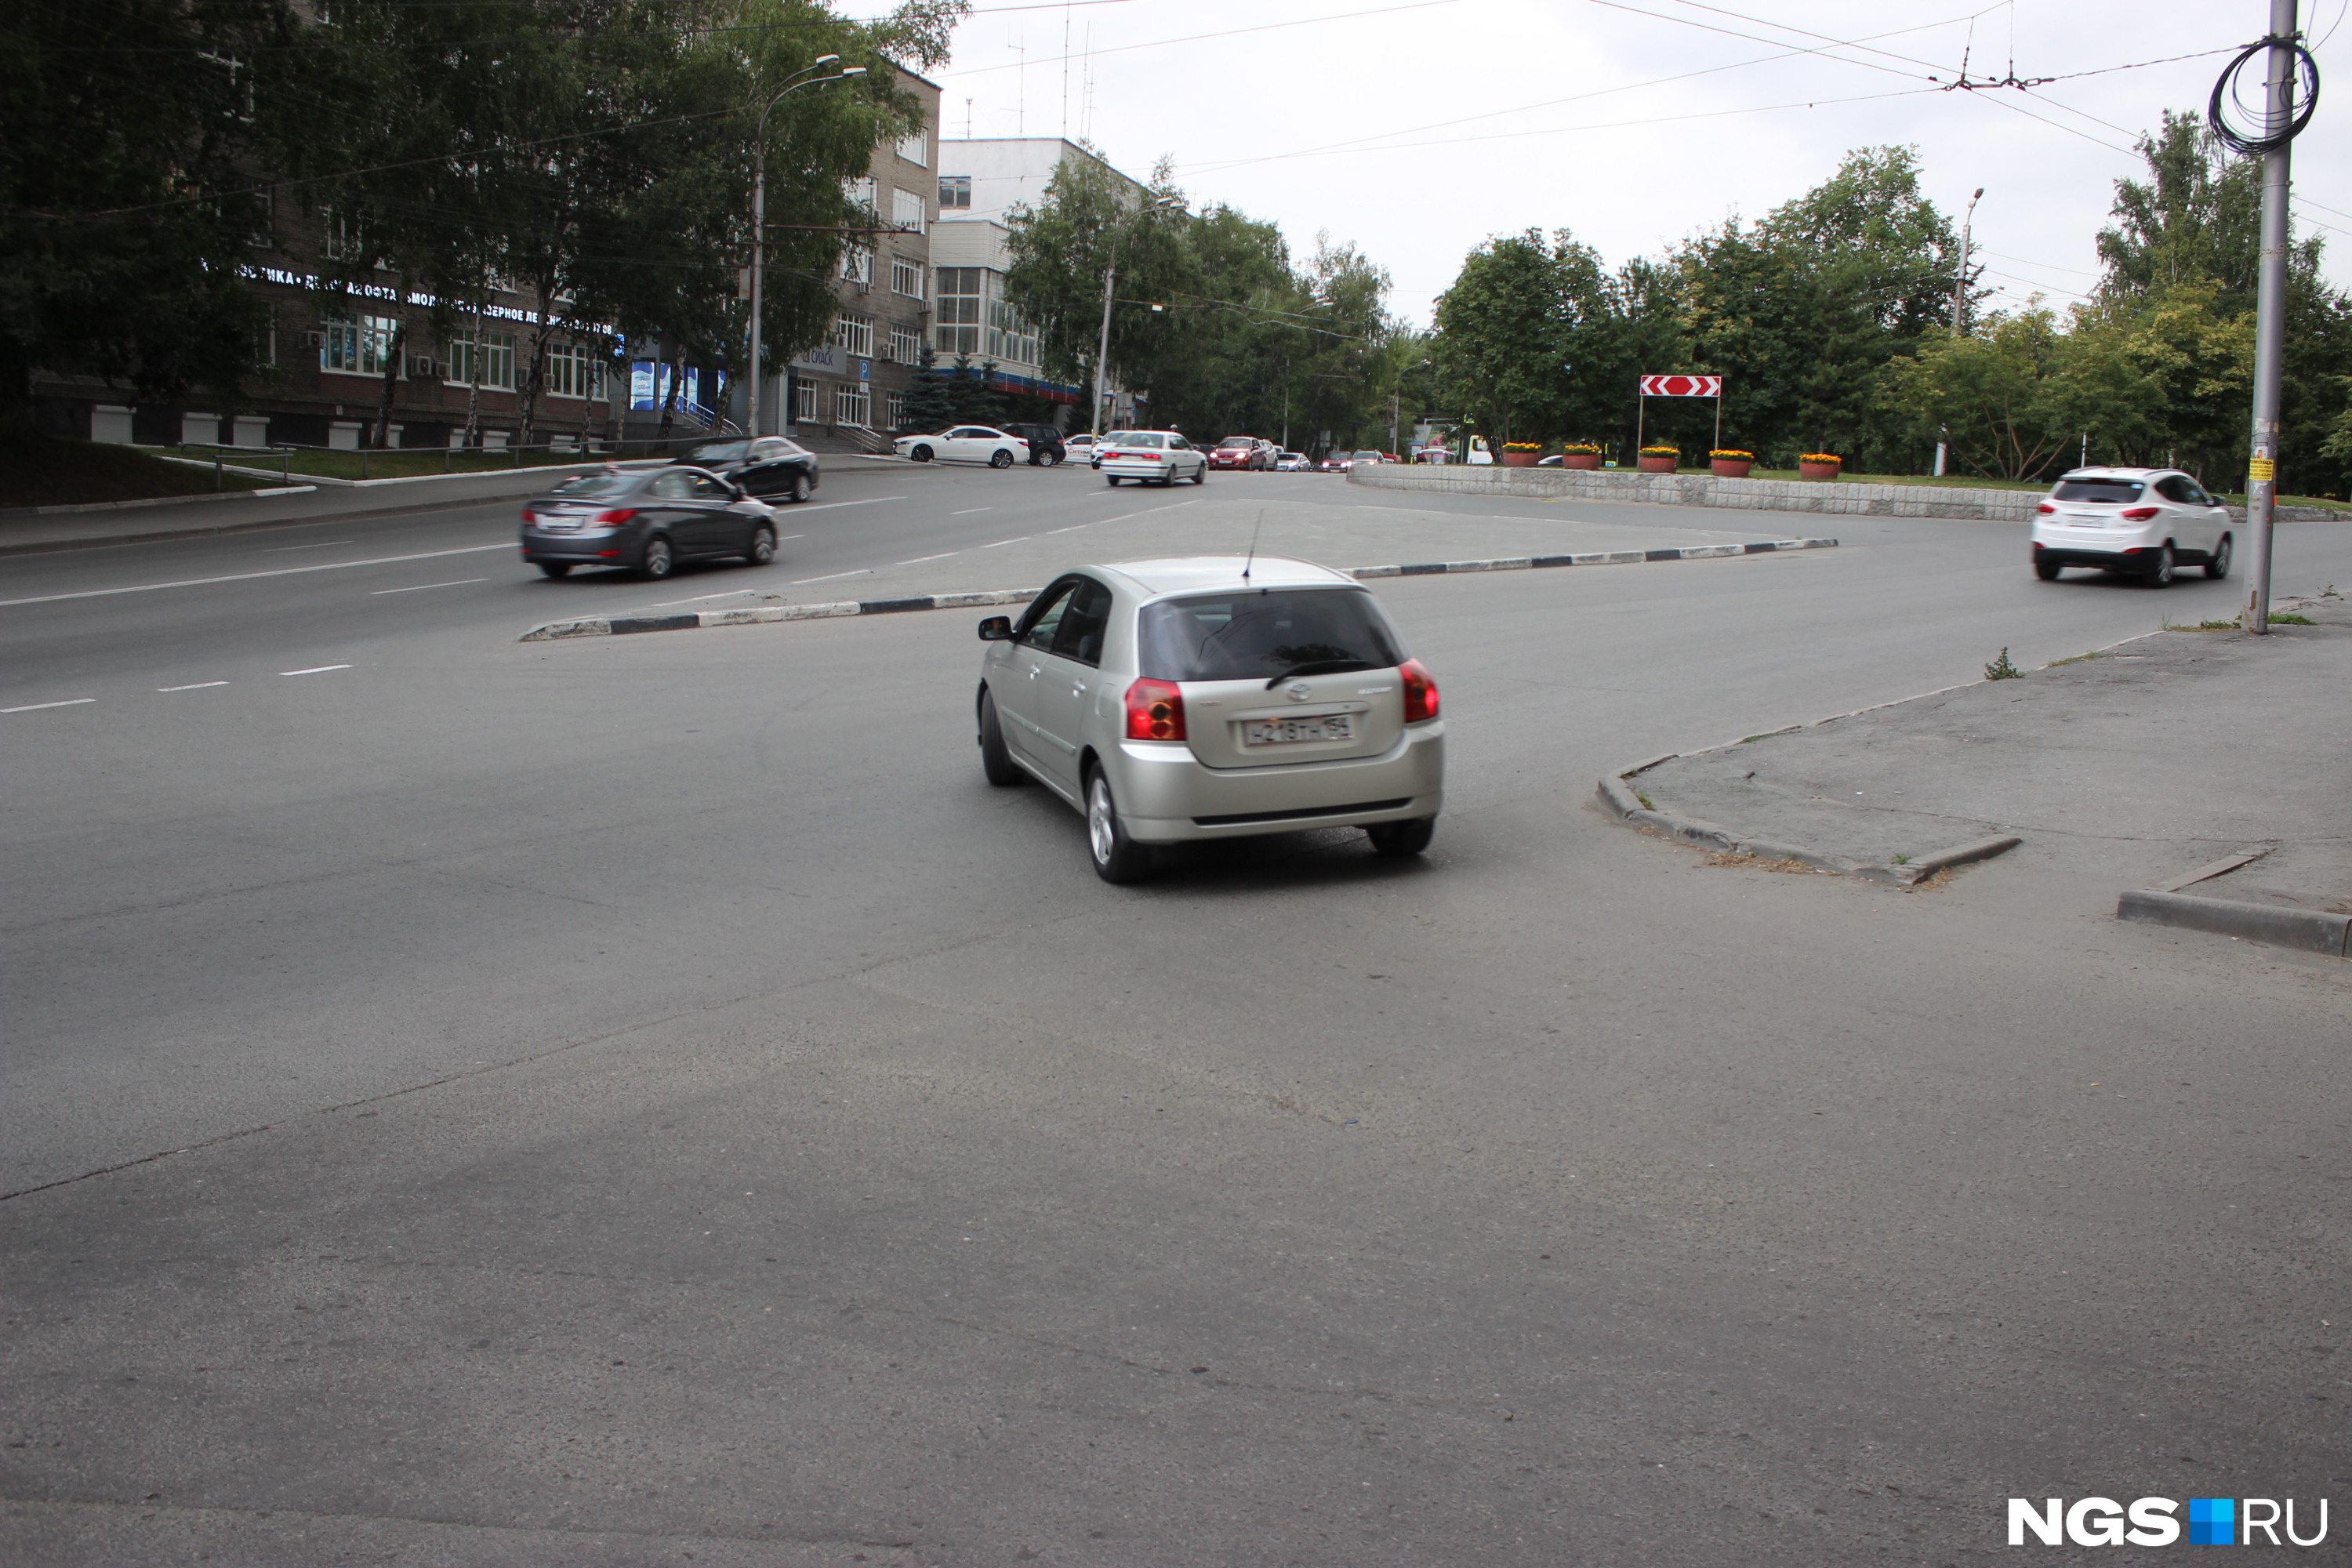 Самый глупый перекресток в Новосибирске, как ездить по Красному проспекту -  24 июля 2020 - НГС